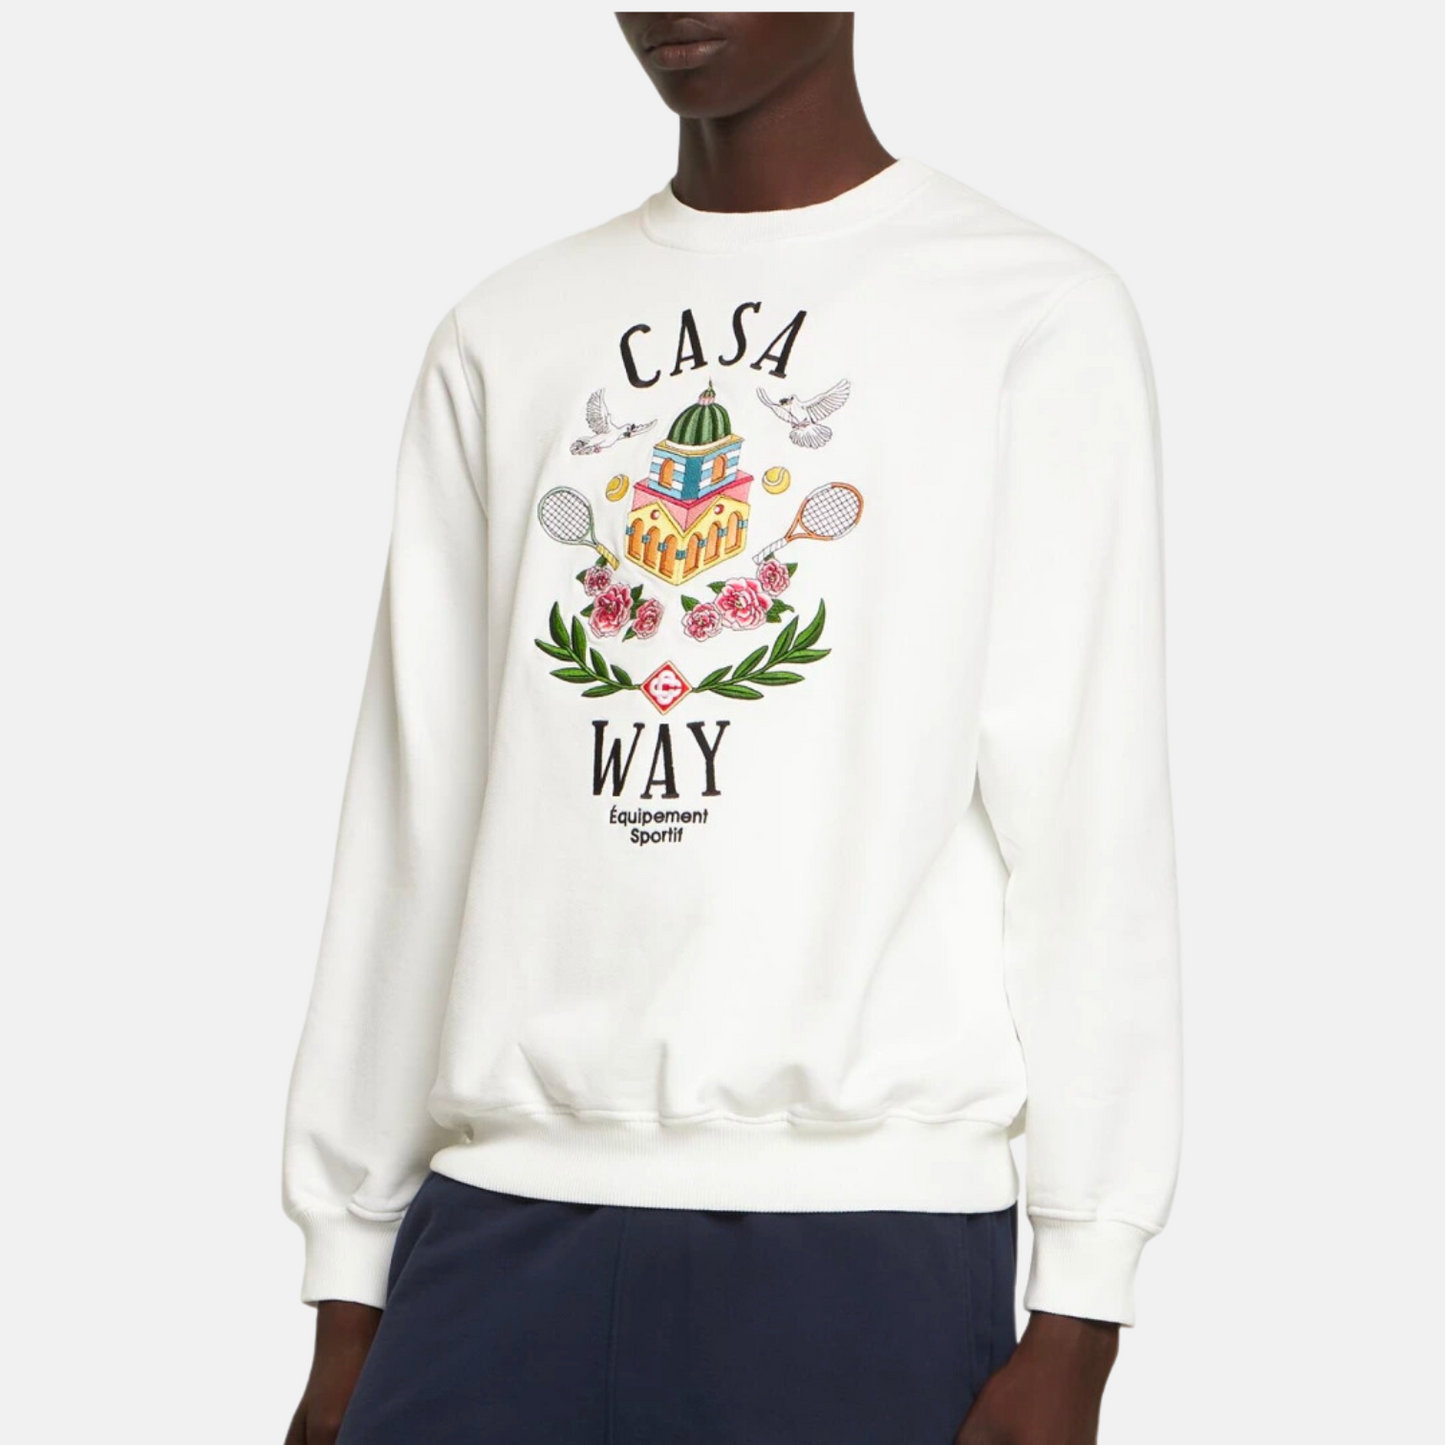 Casablanca Casa Way Sweatshirt